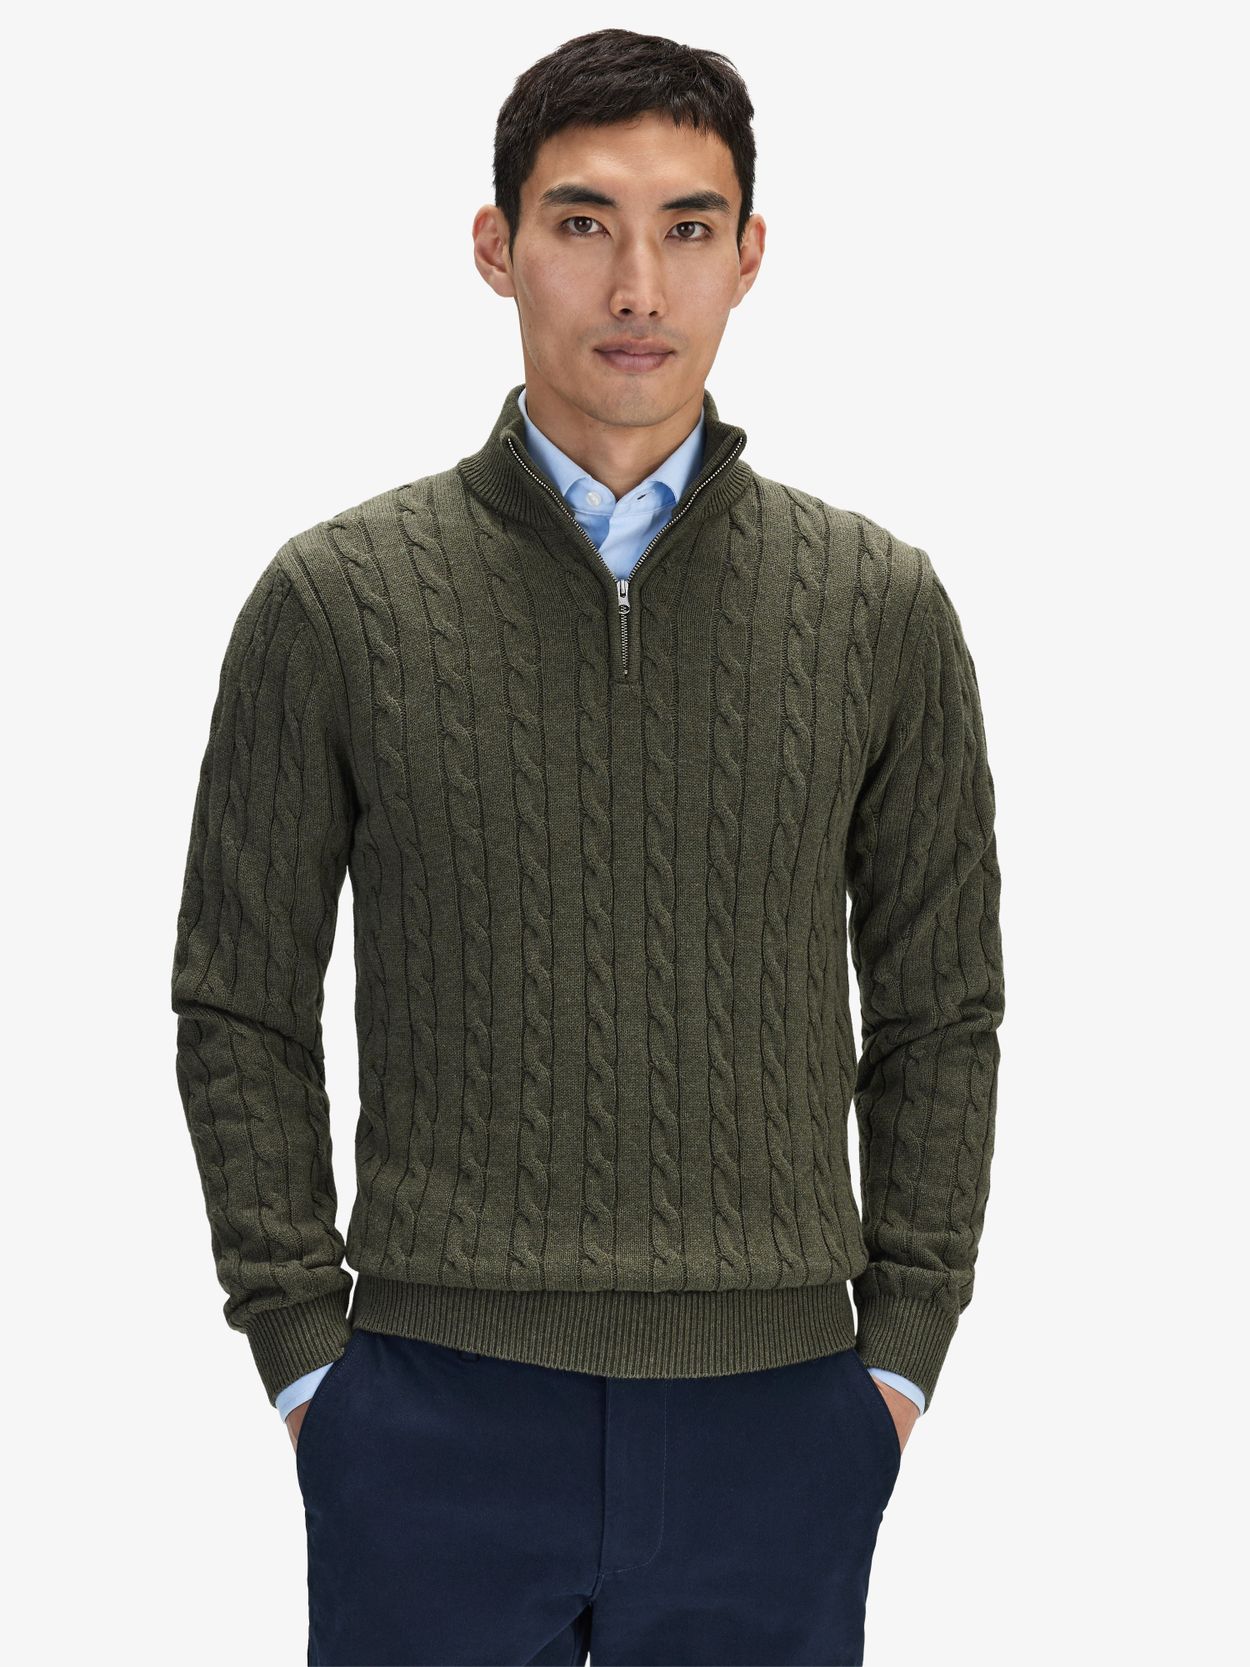 Green Zipper Sweater